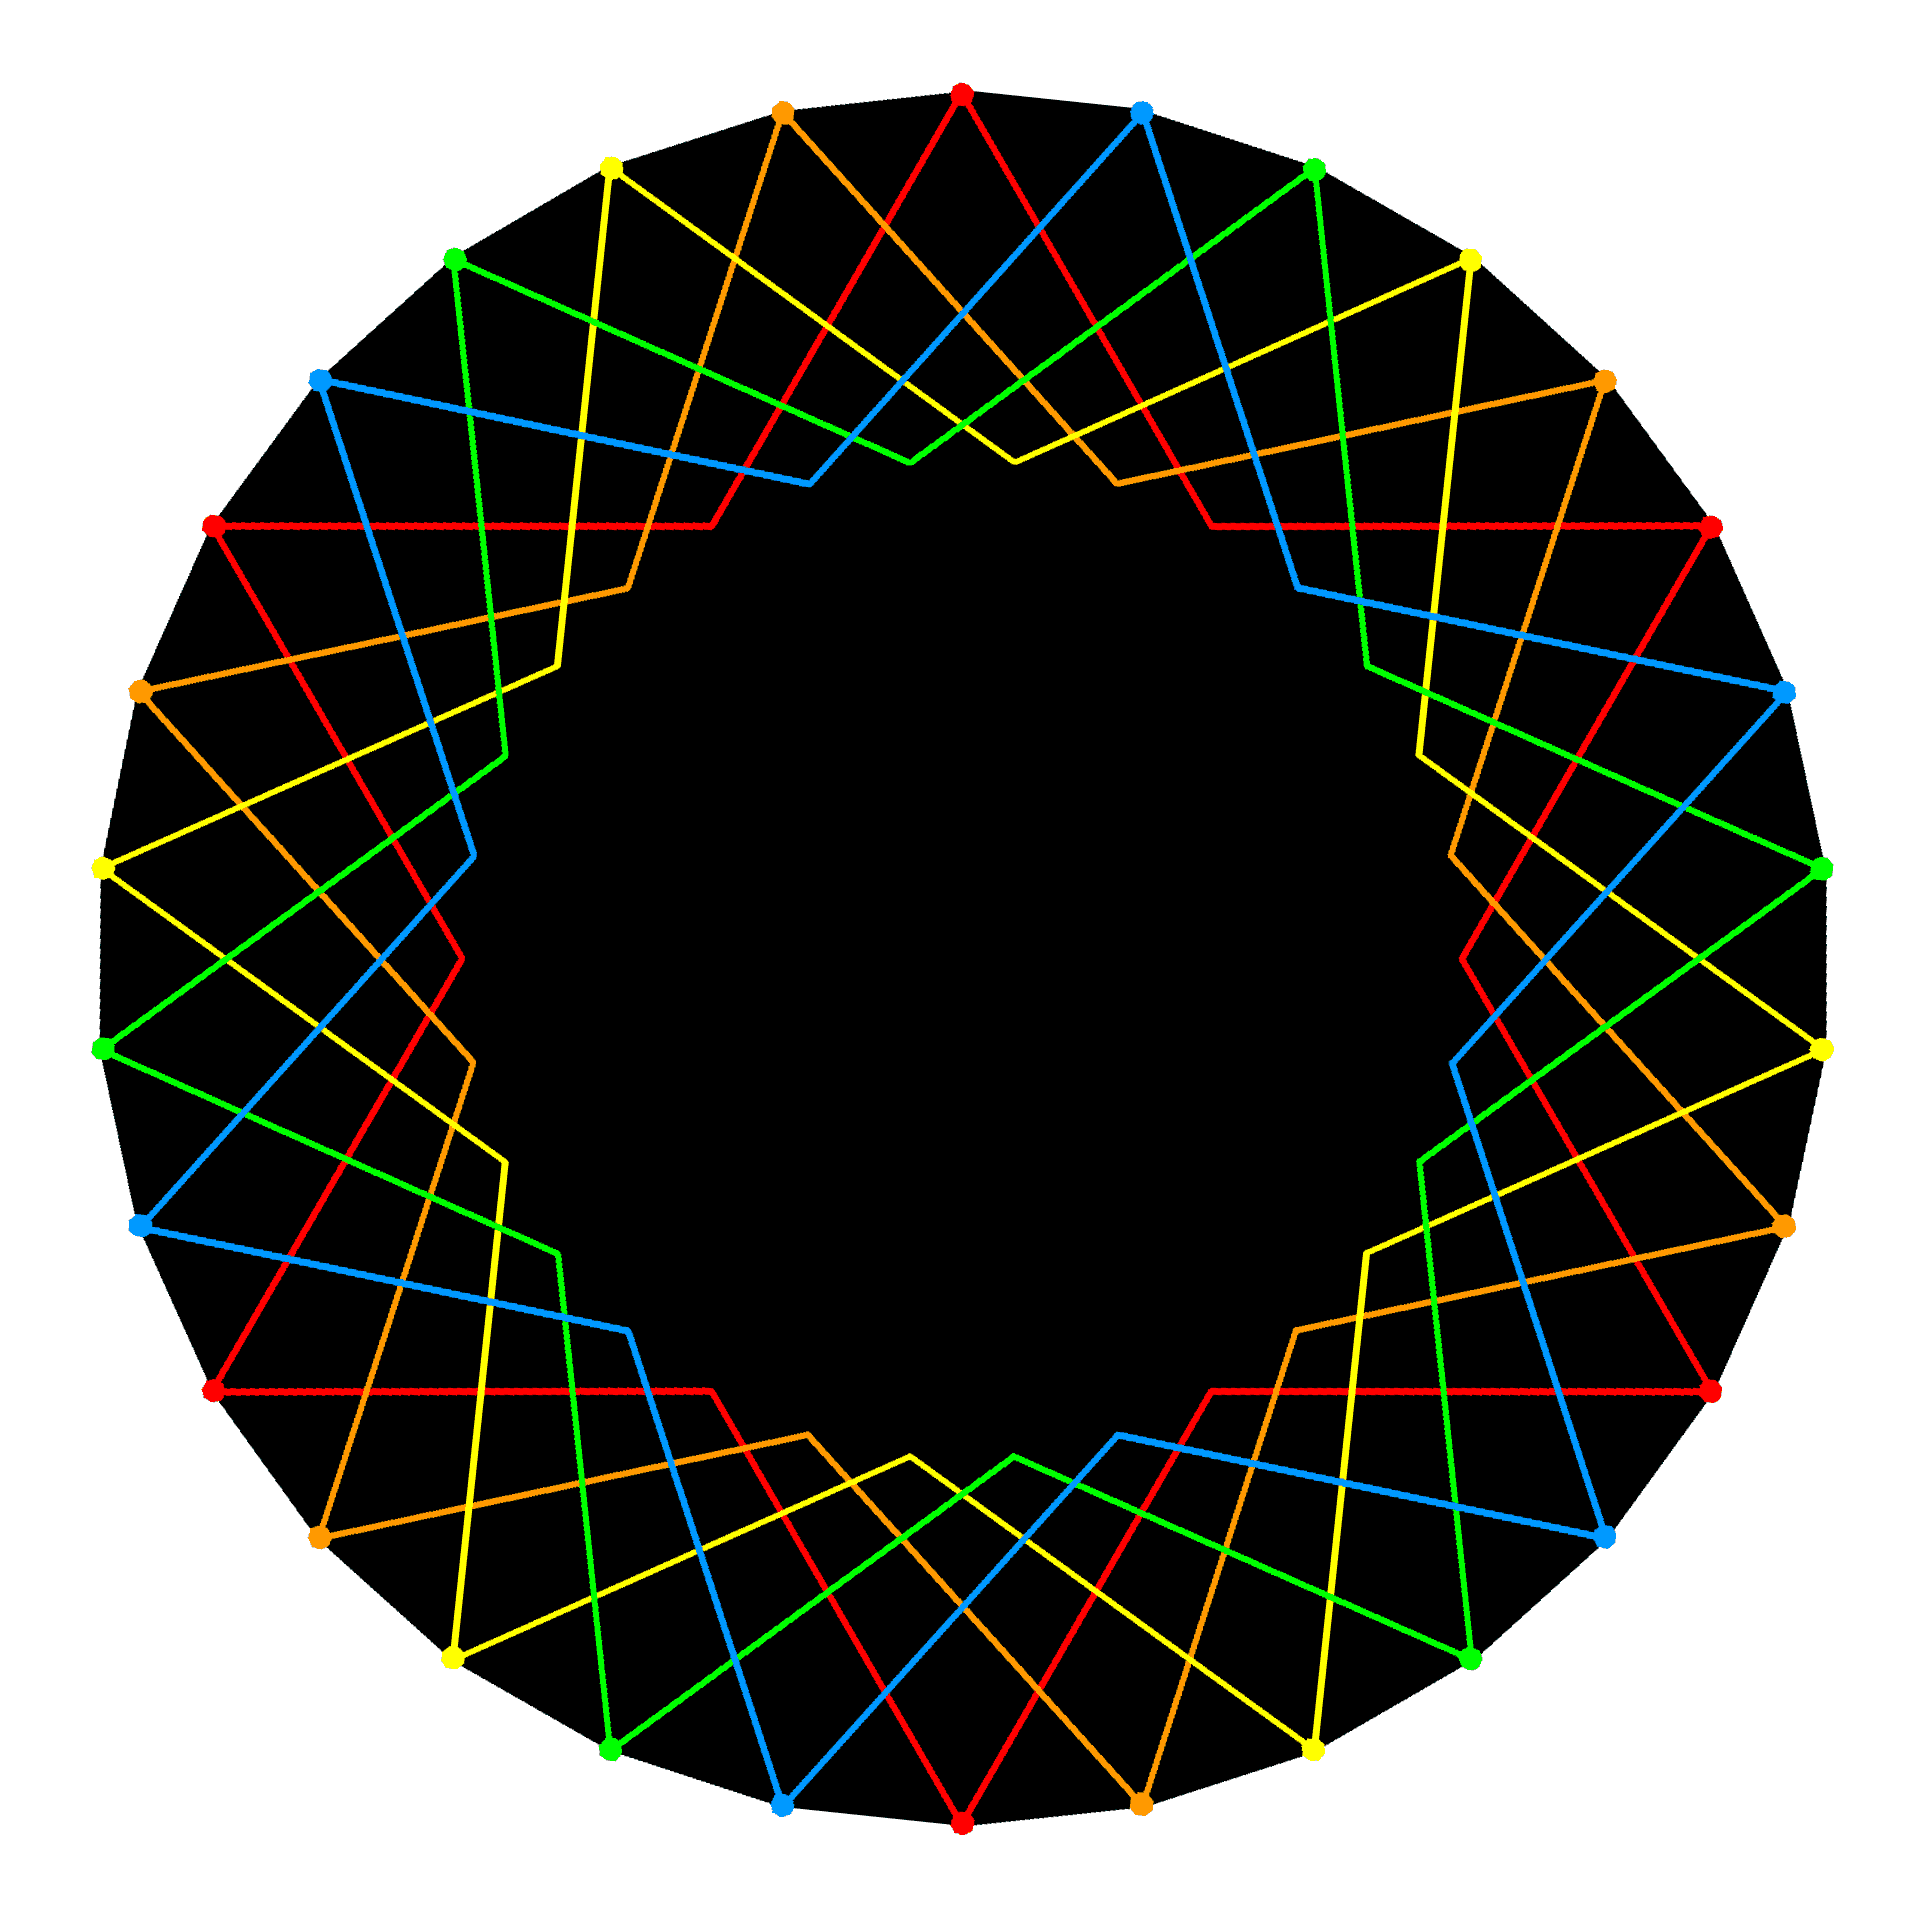 triacontagon as 5 hexagons/hexagrams